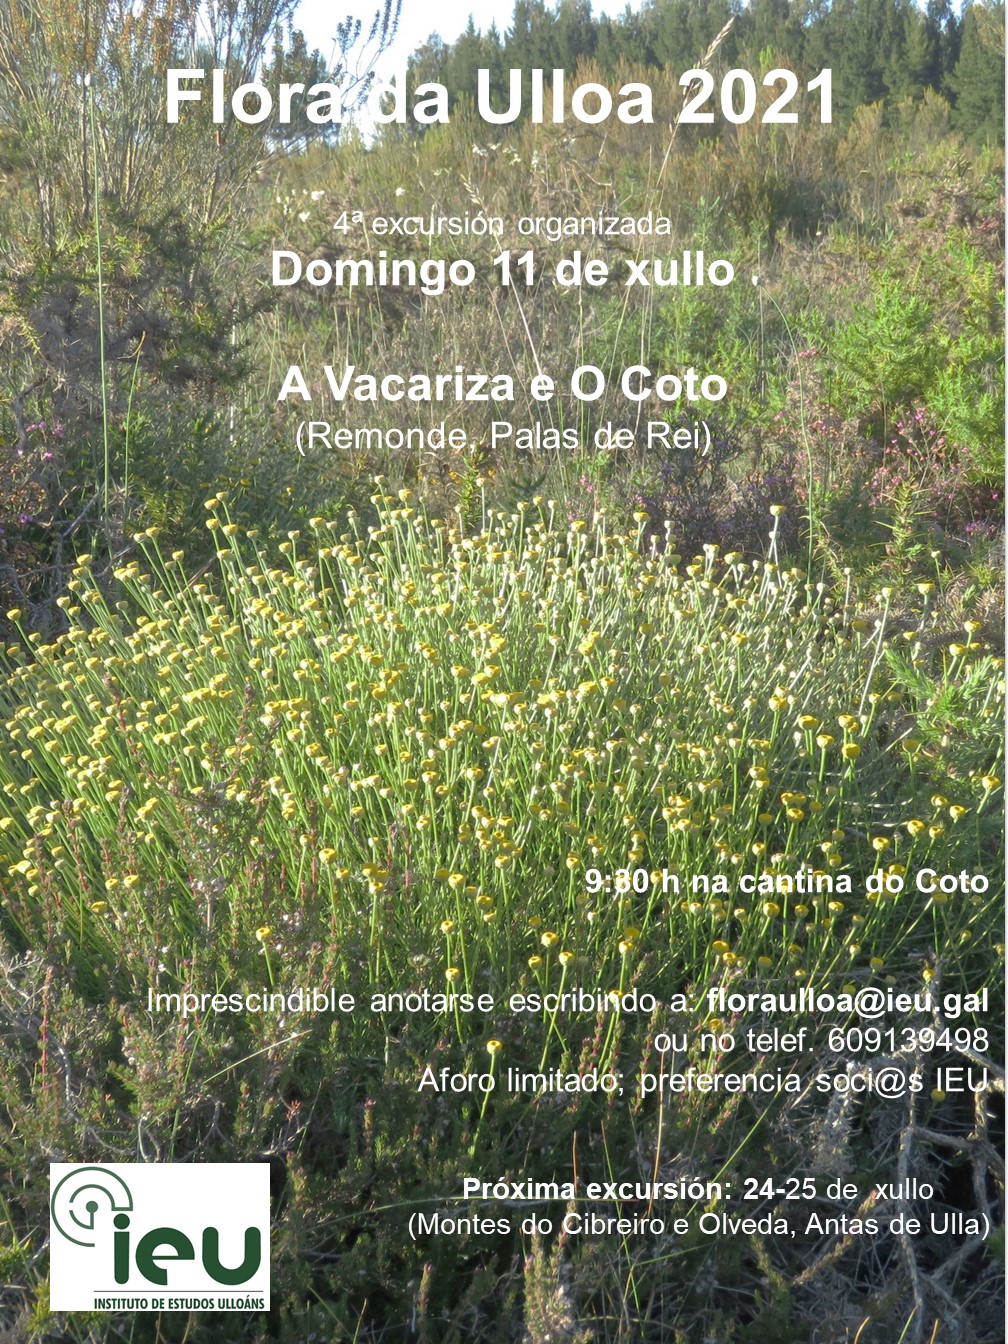 Excursión Flora da Ulloa 4-21, A Vacariza e O Coto, Instituto de Estudos Ulloáns (11-7-2021)